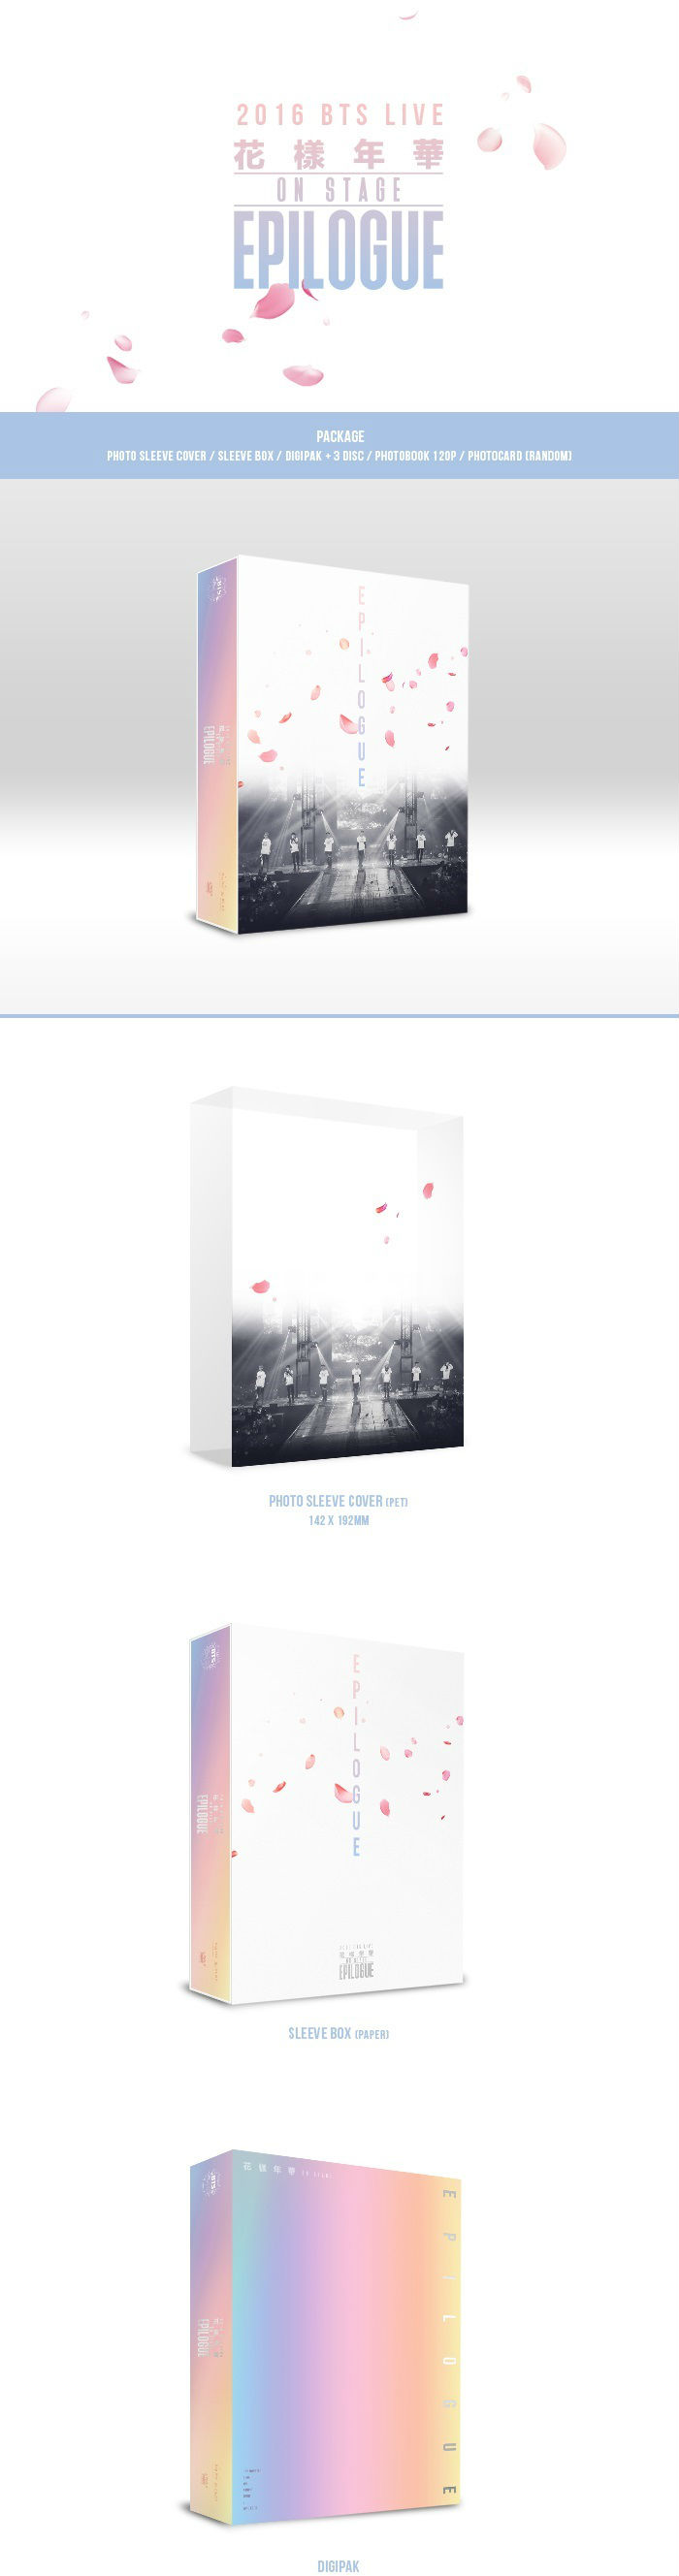 방탄소년단(BTS) - 2016 BTS LIVE 花樣年華 ON STAGE : EPILOGUE CONCERT DVD